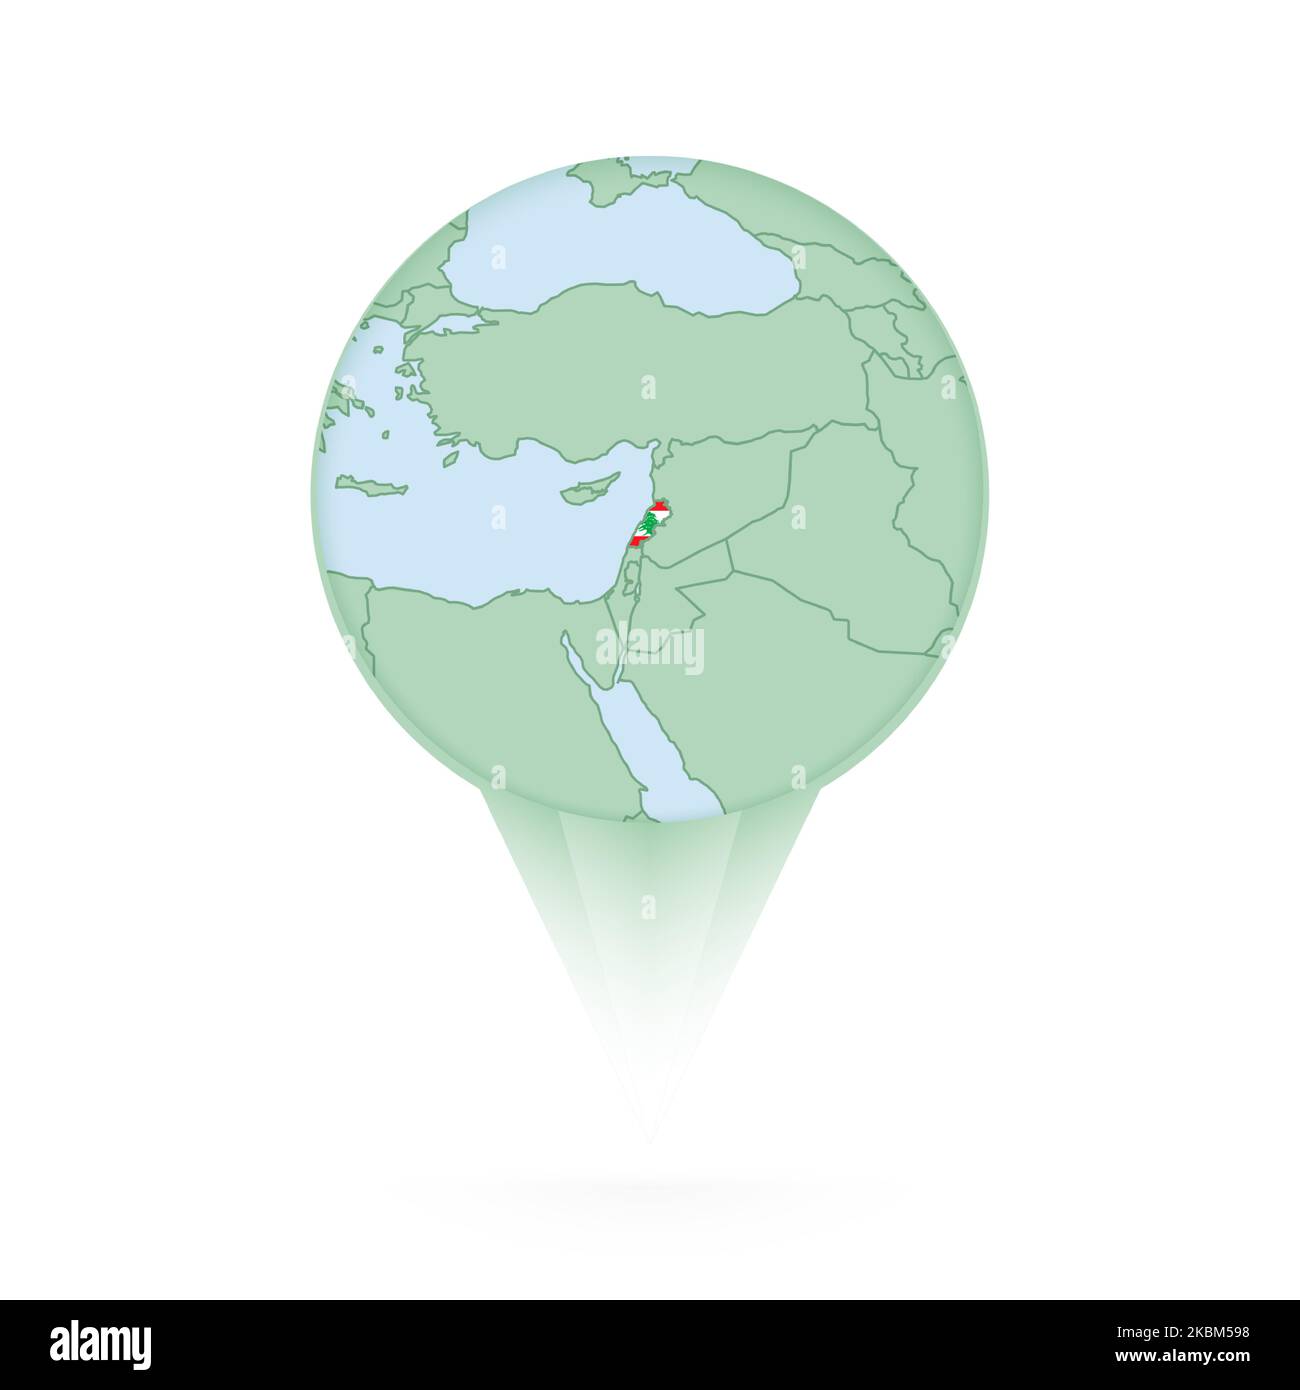 Carte du Liban, icône d'emplacement élégante avec carte et drapeau du Liban. Icône PIN verte. Illustration de Vecteur